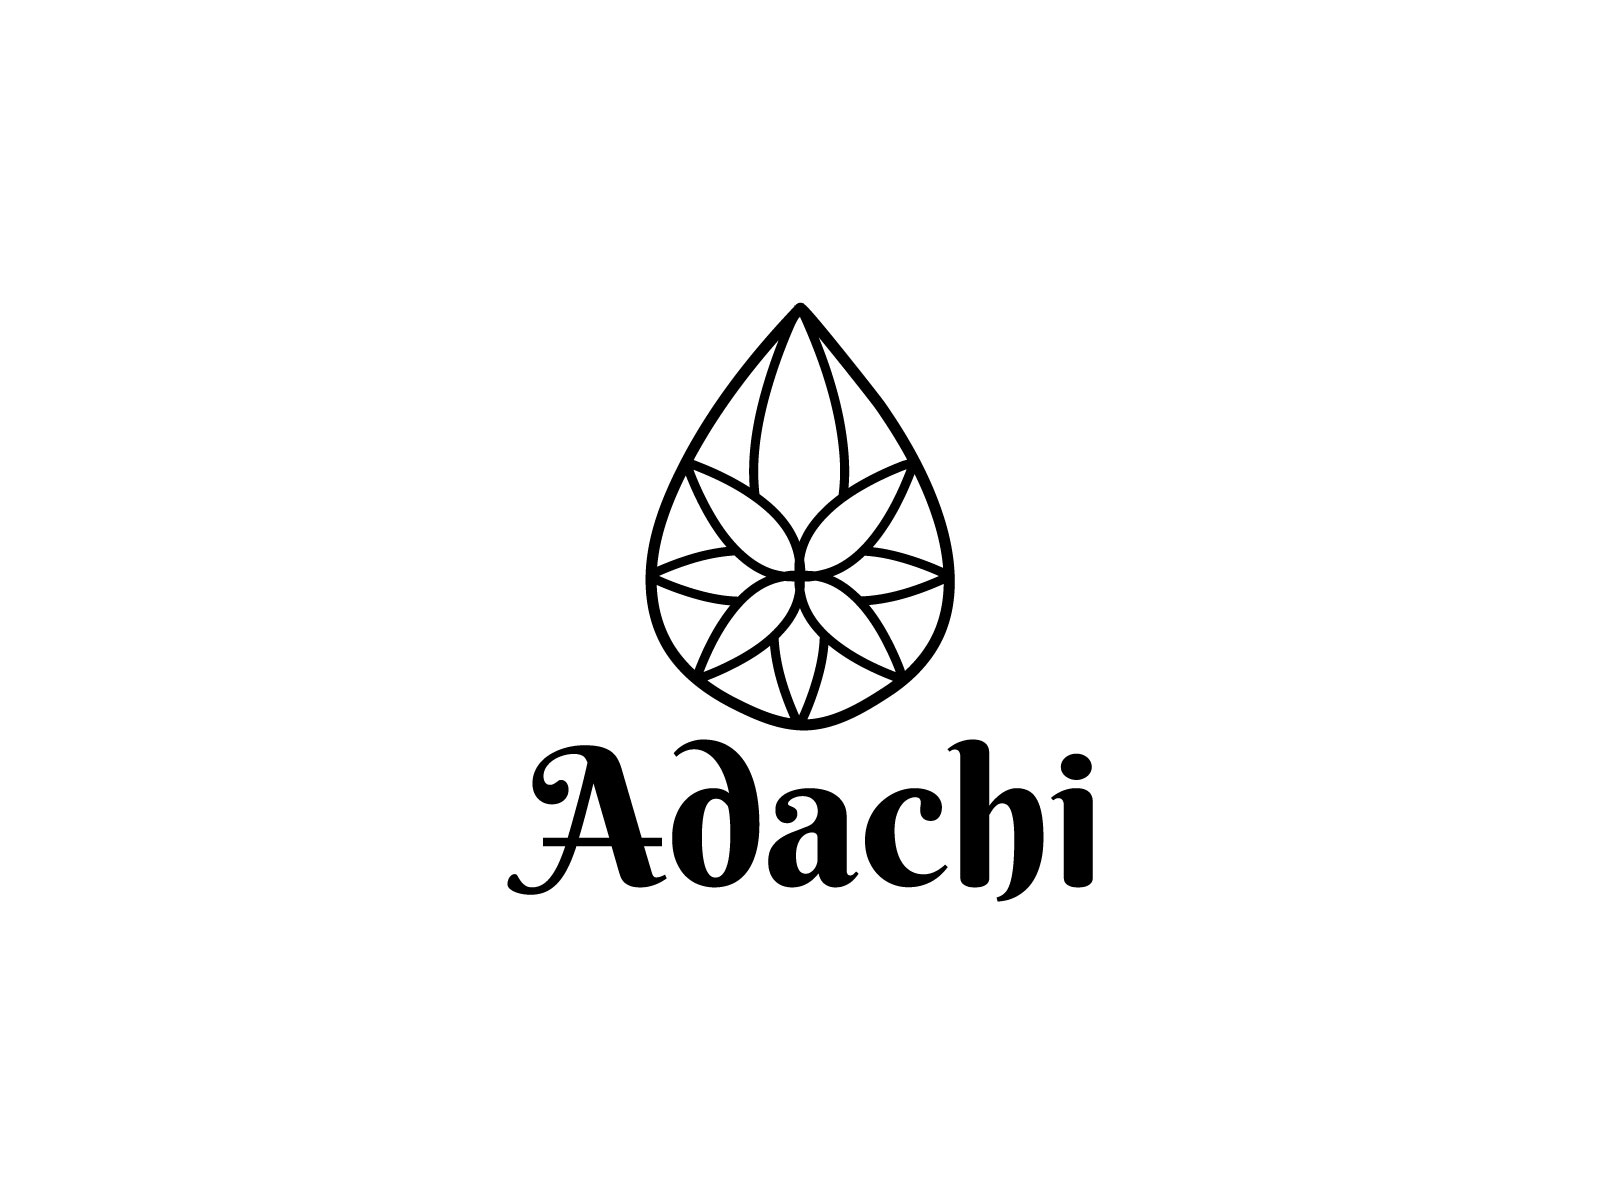 adachi-by-artgenetic-on-dribbble